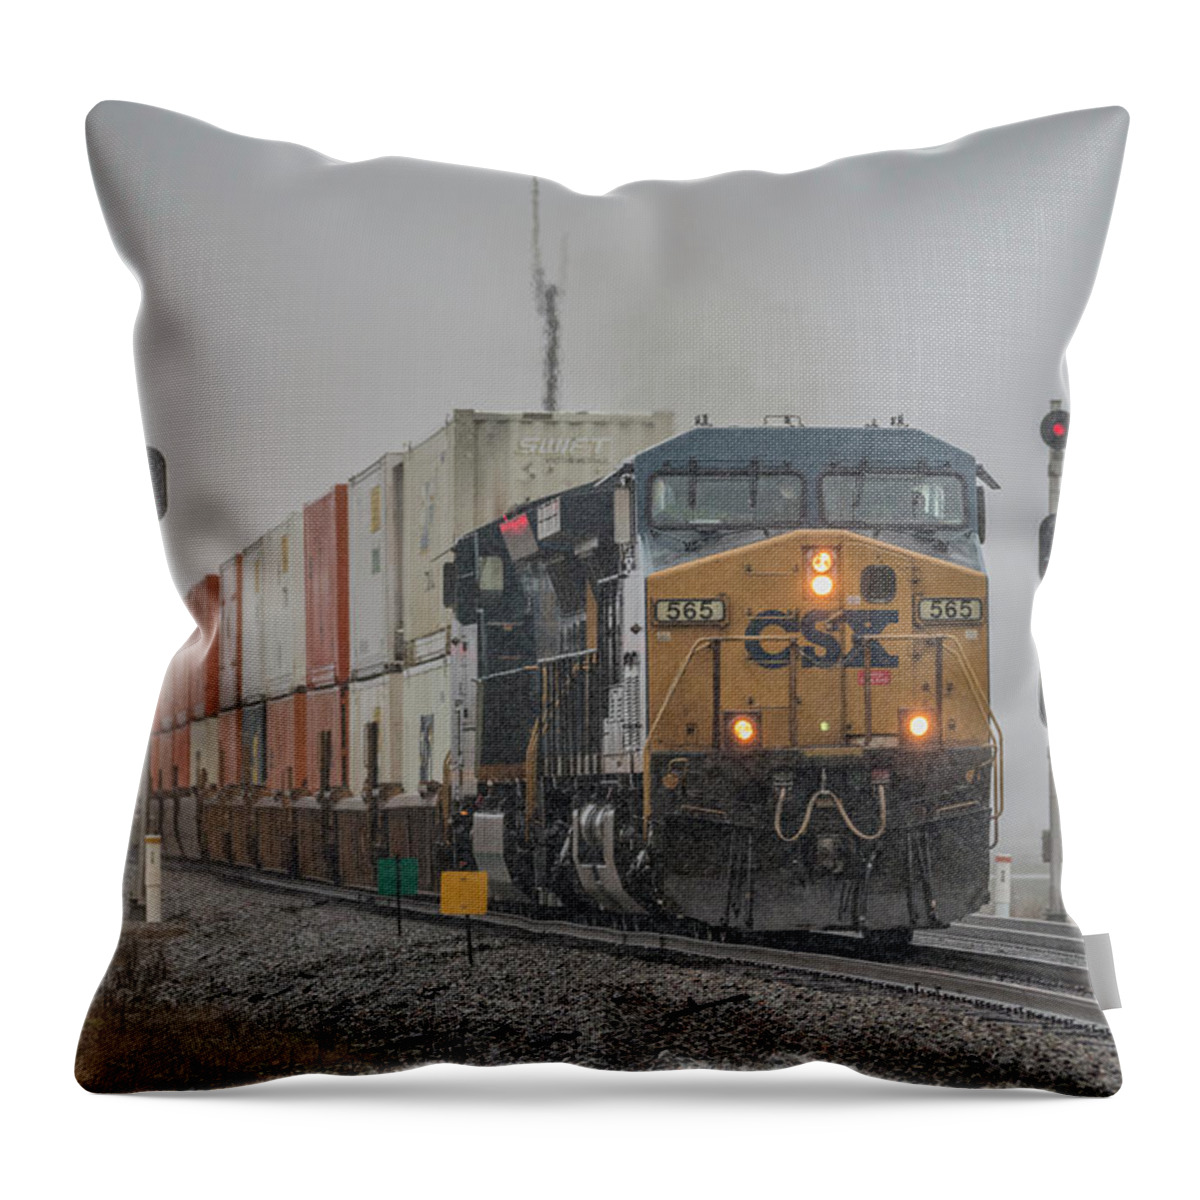 Railroad Throw Pillow featuring the photograph CSX hot intermodal Q029 by Jim Pearson